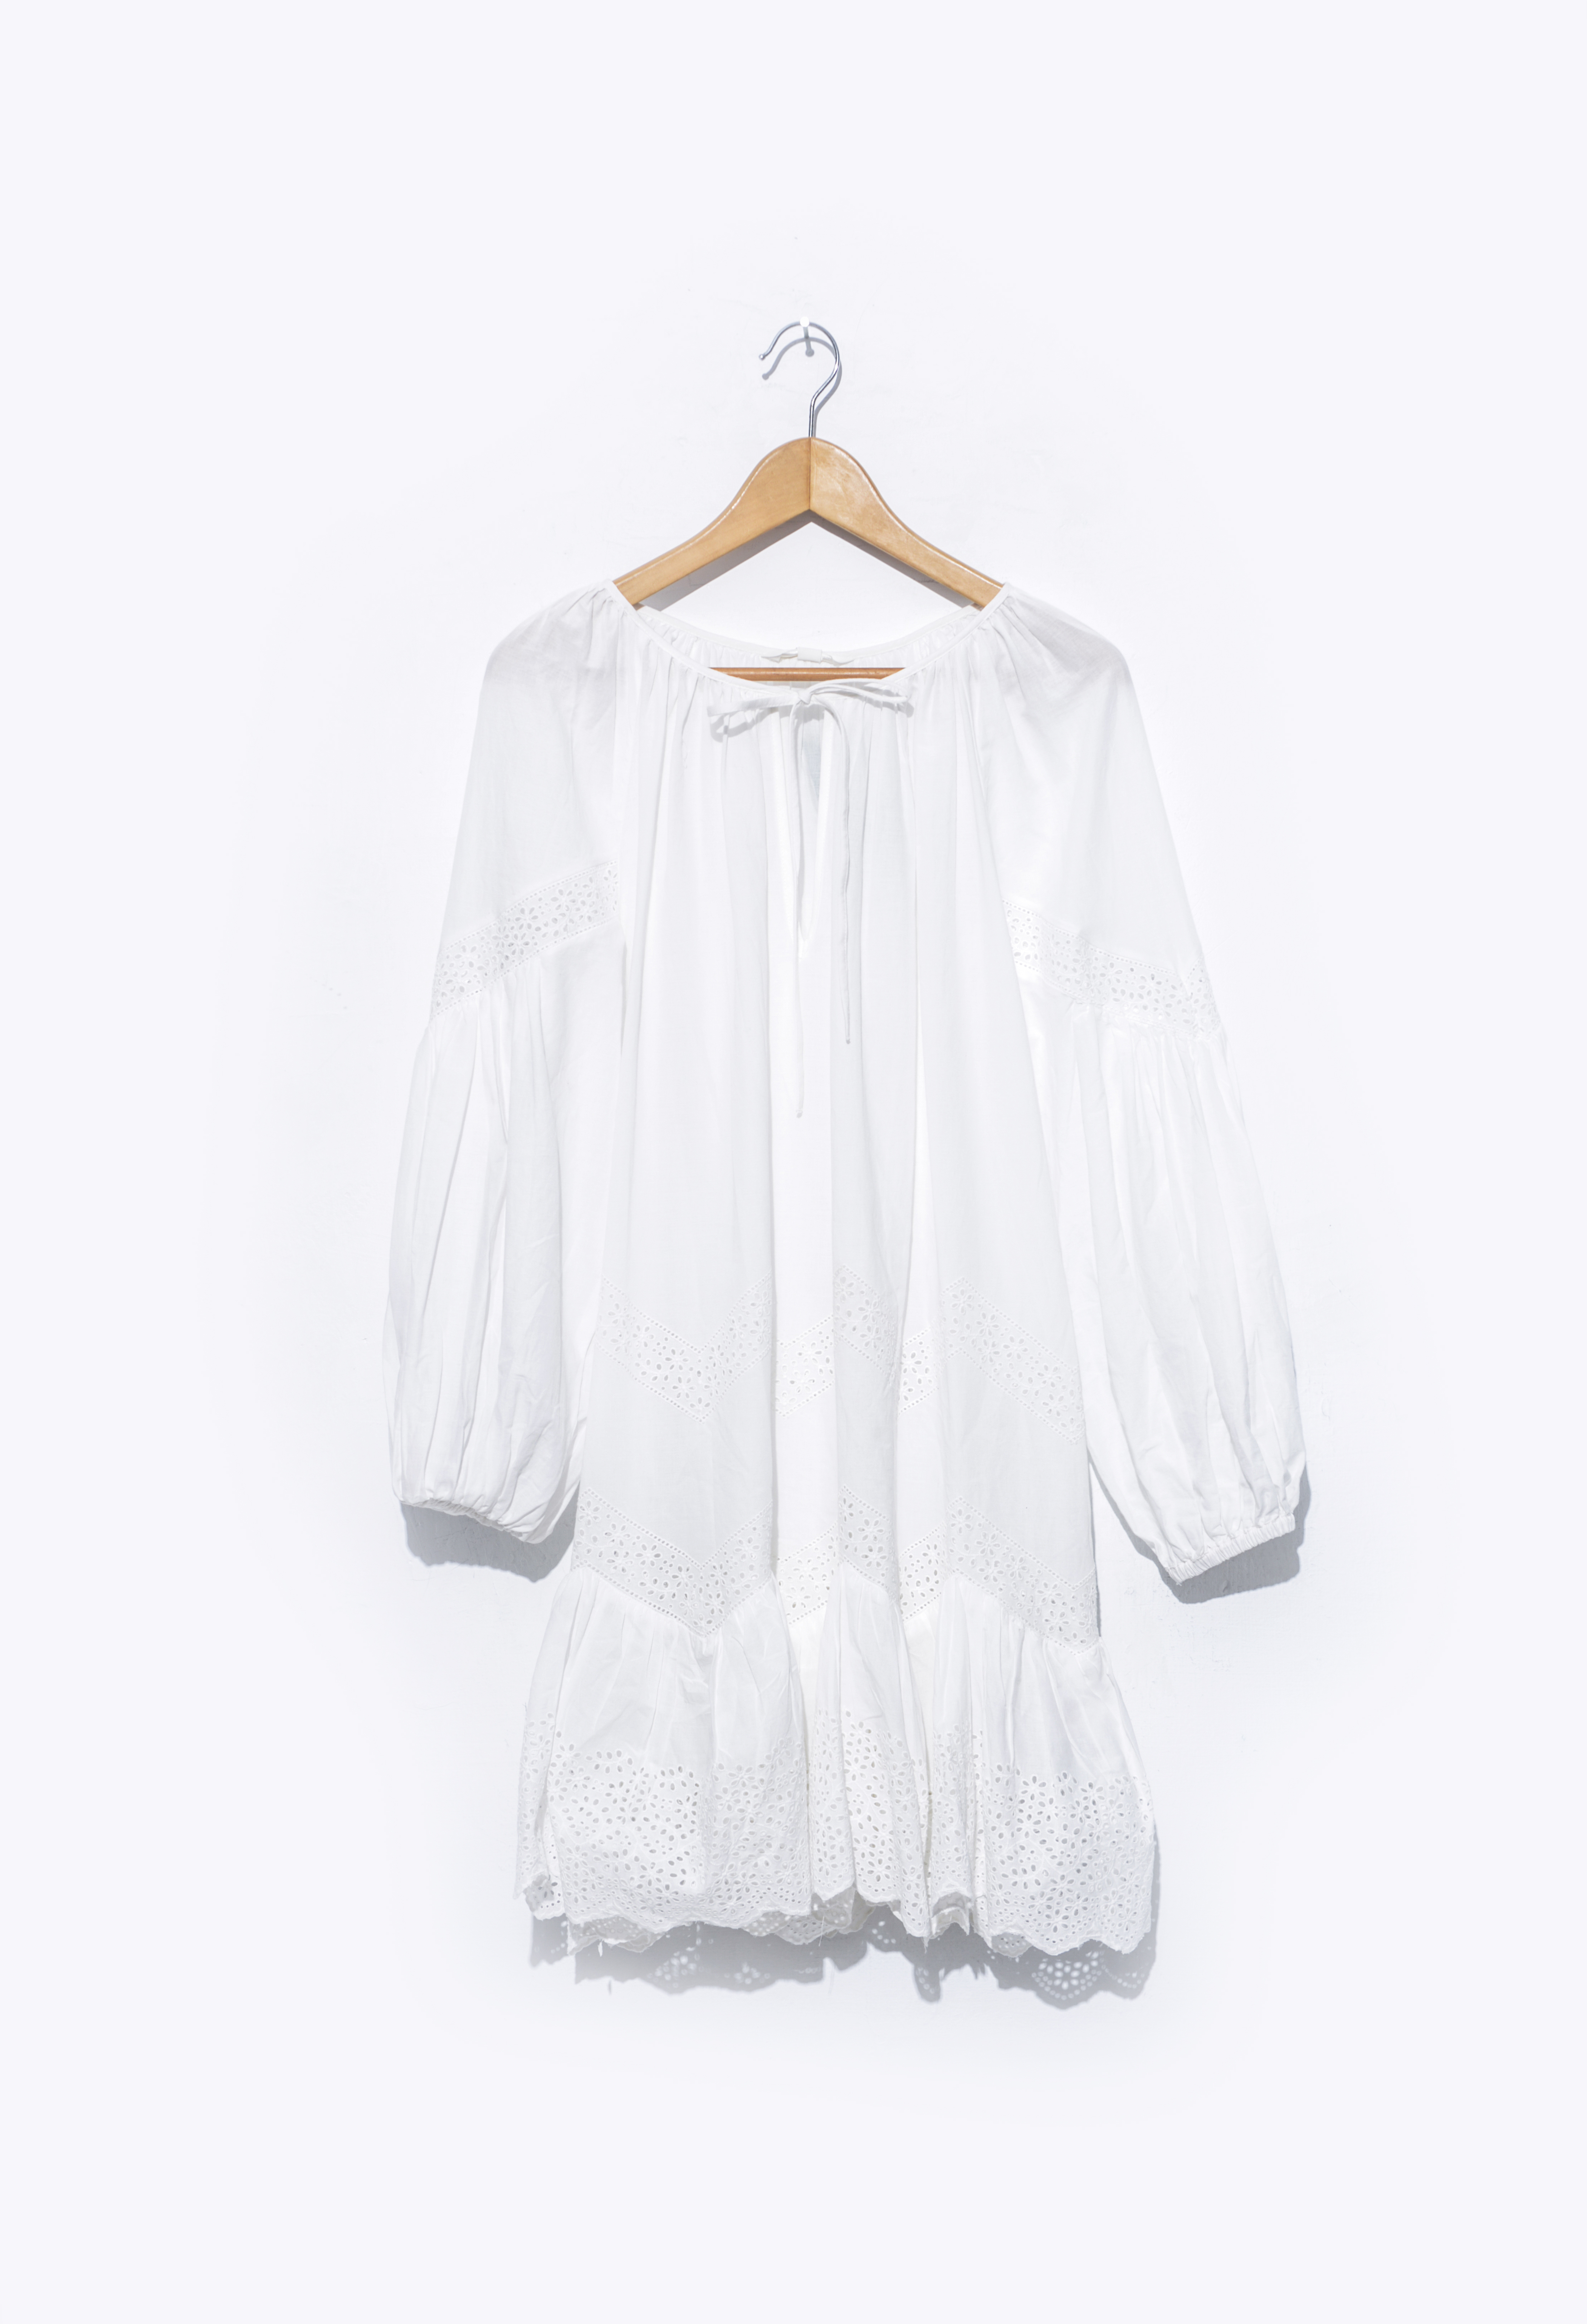 Ein weißes Kleid auf einem Kleiderbügel | Quelle: Shutterstock